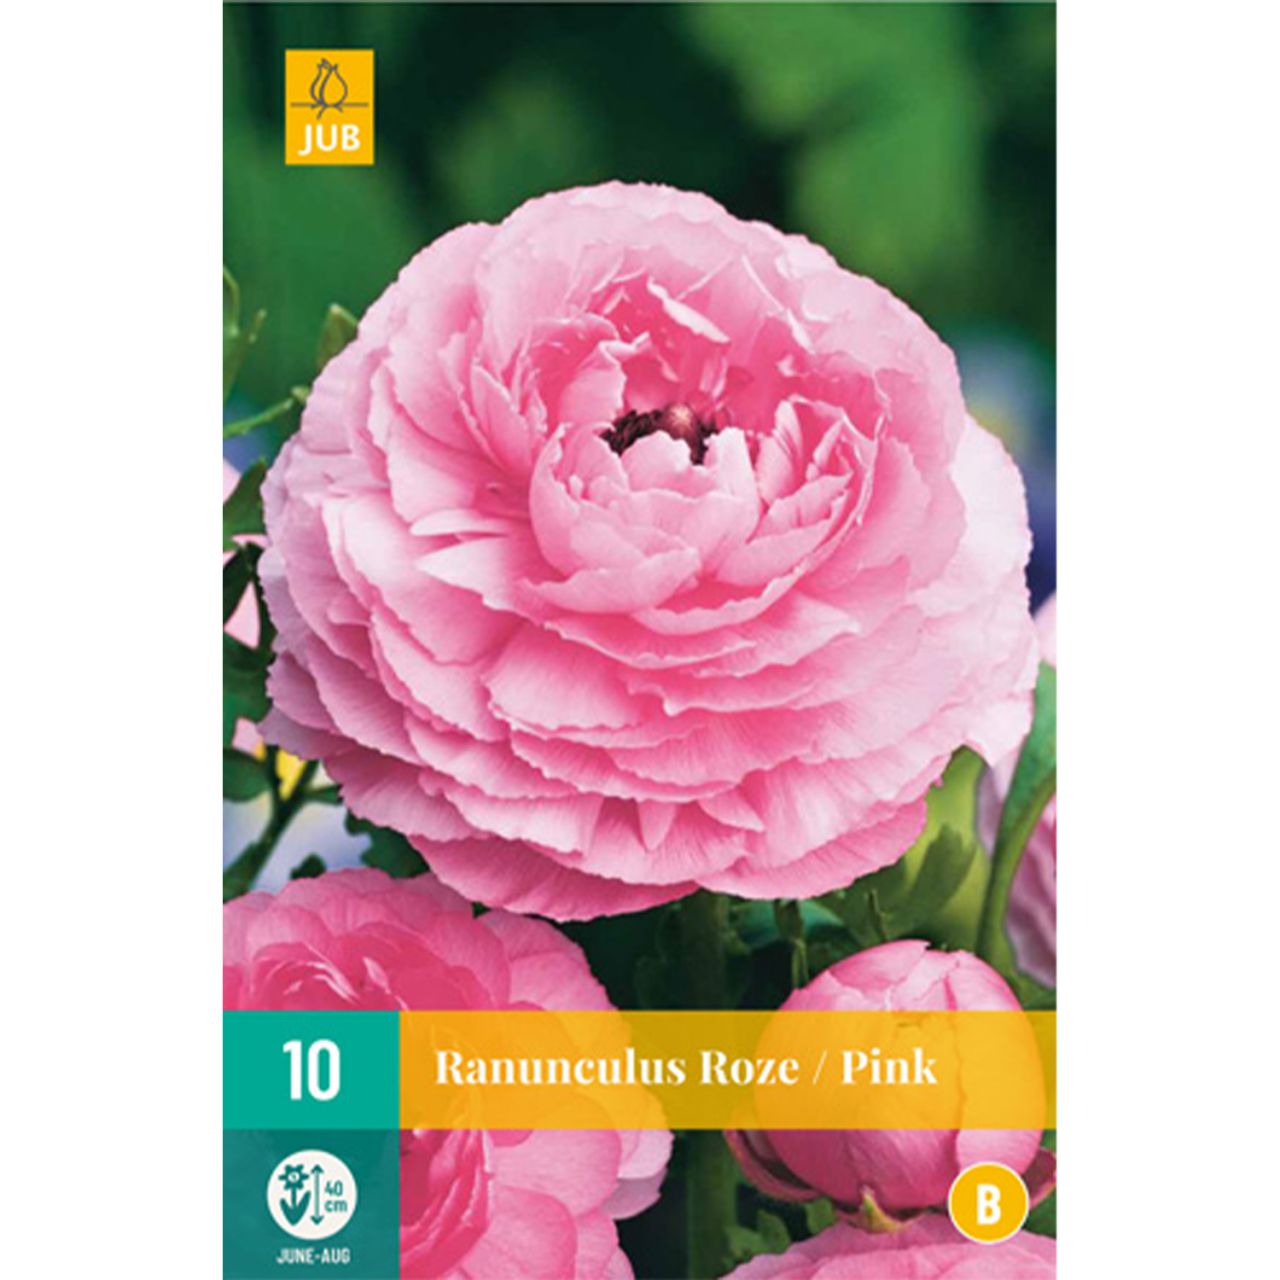 Kategorie <b>Frühlings-Blumenzwiebeln </b> - Ranunkeln 'Rosa' - 10 Stück - Ranunculus